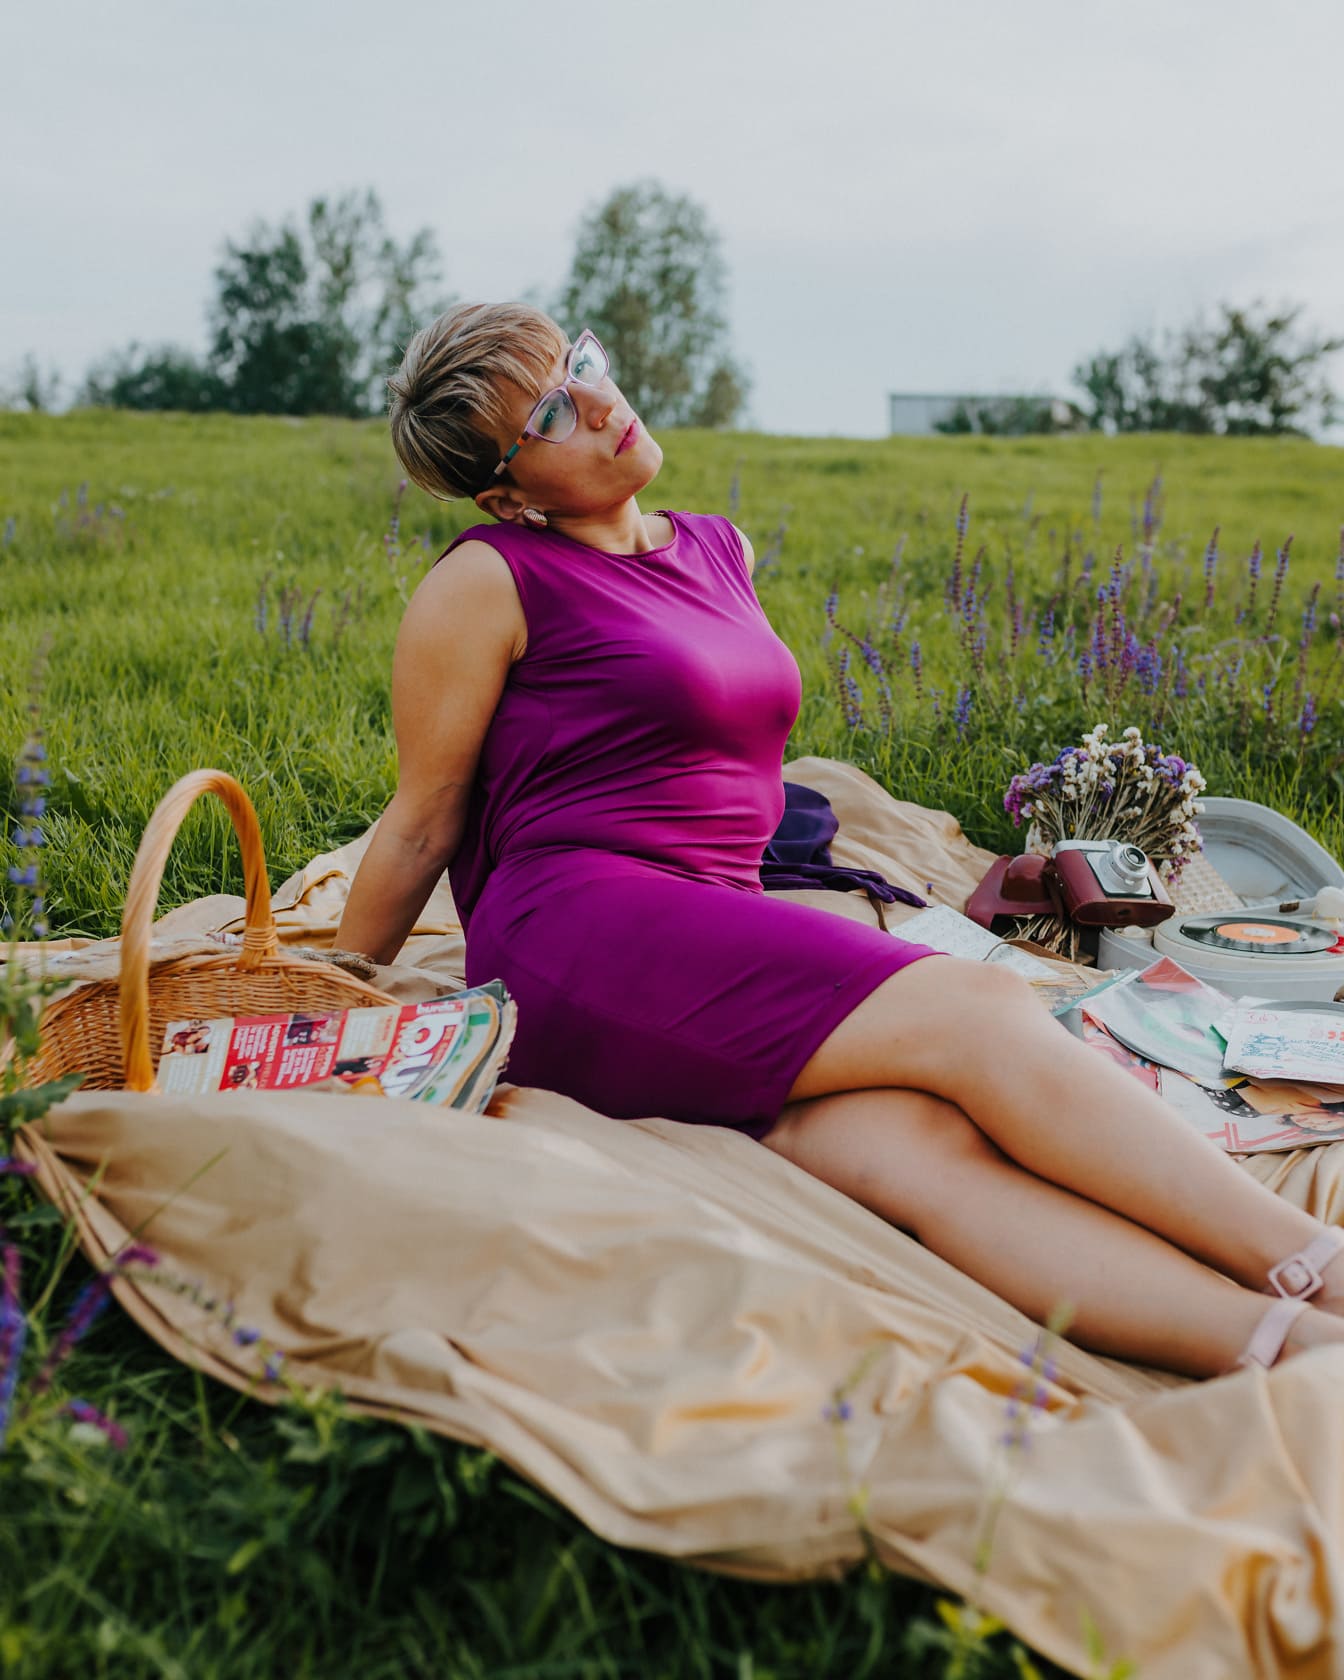 Pen kvinne nyter på piknik på sommerdag